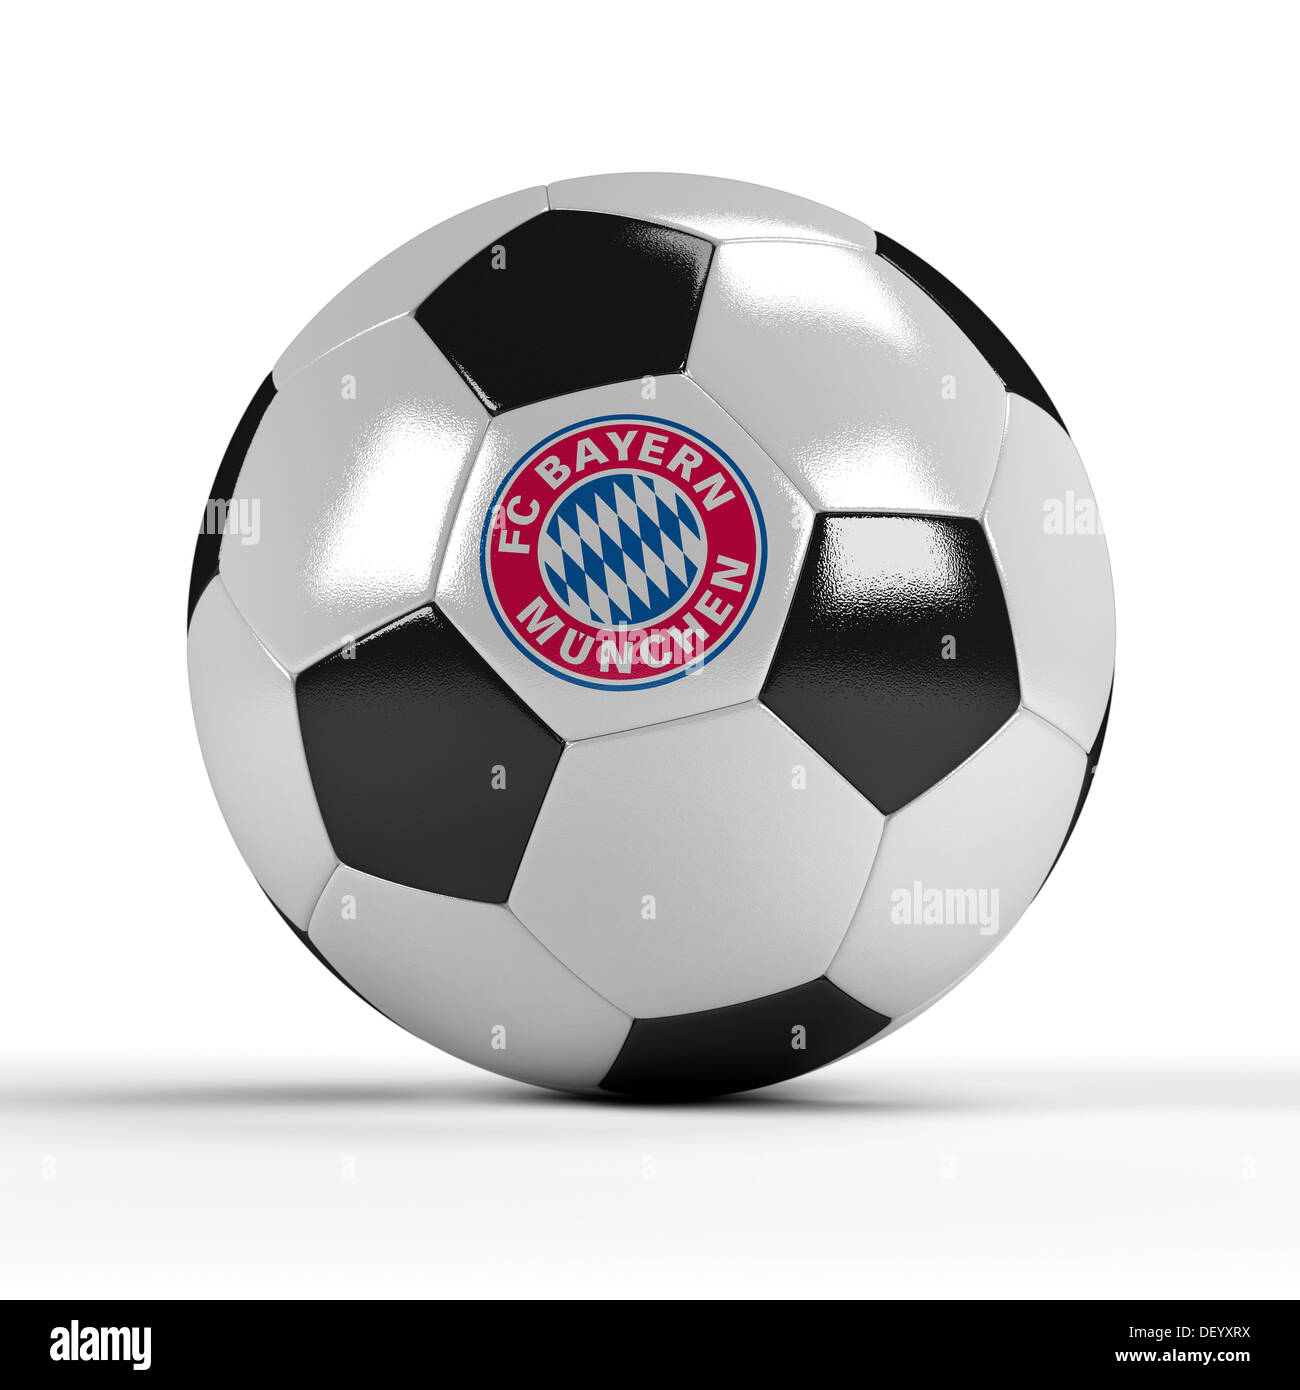 Fußball mit dem Logo des FC Bayern München Stockfotografie - Alamy